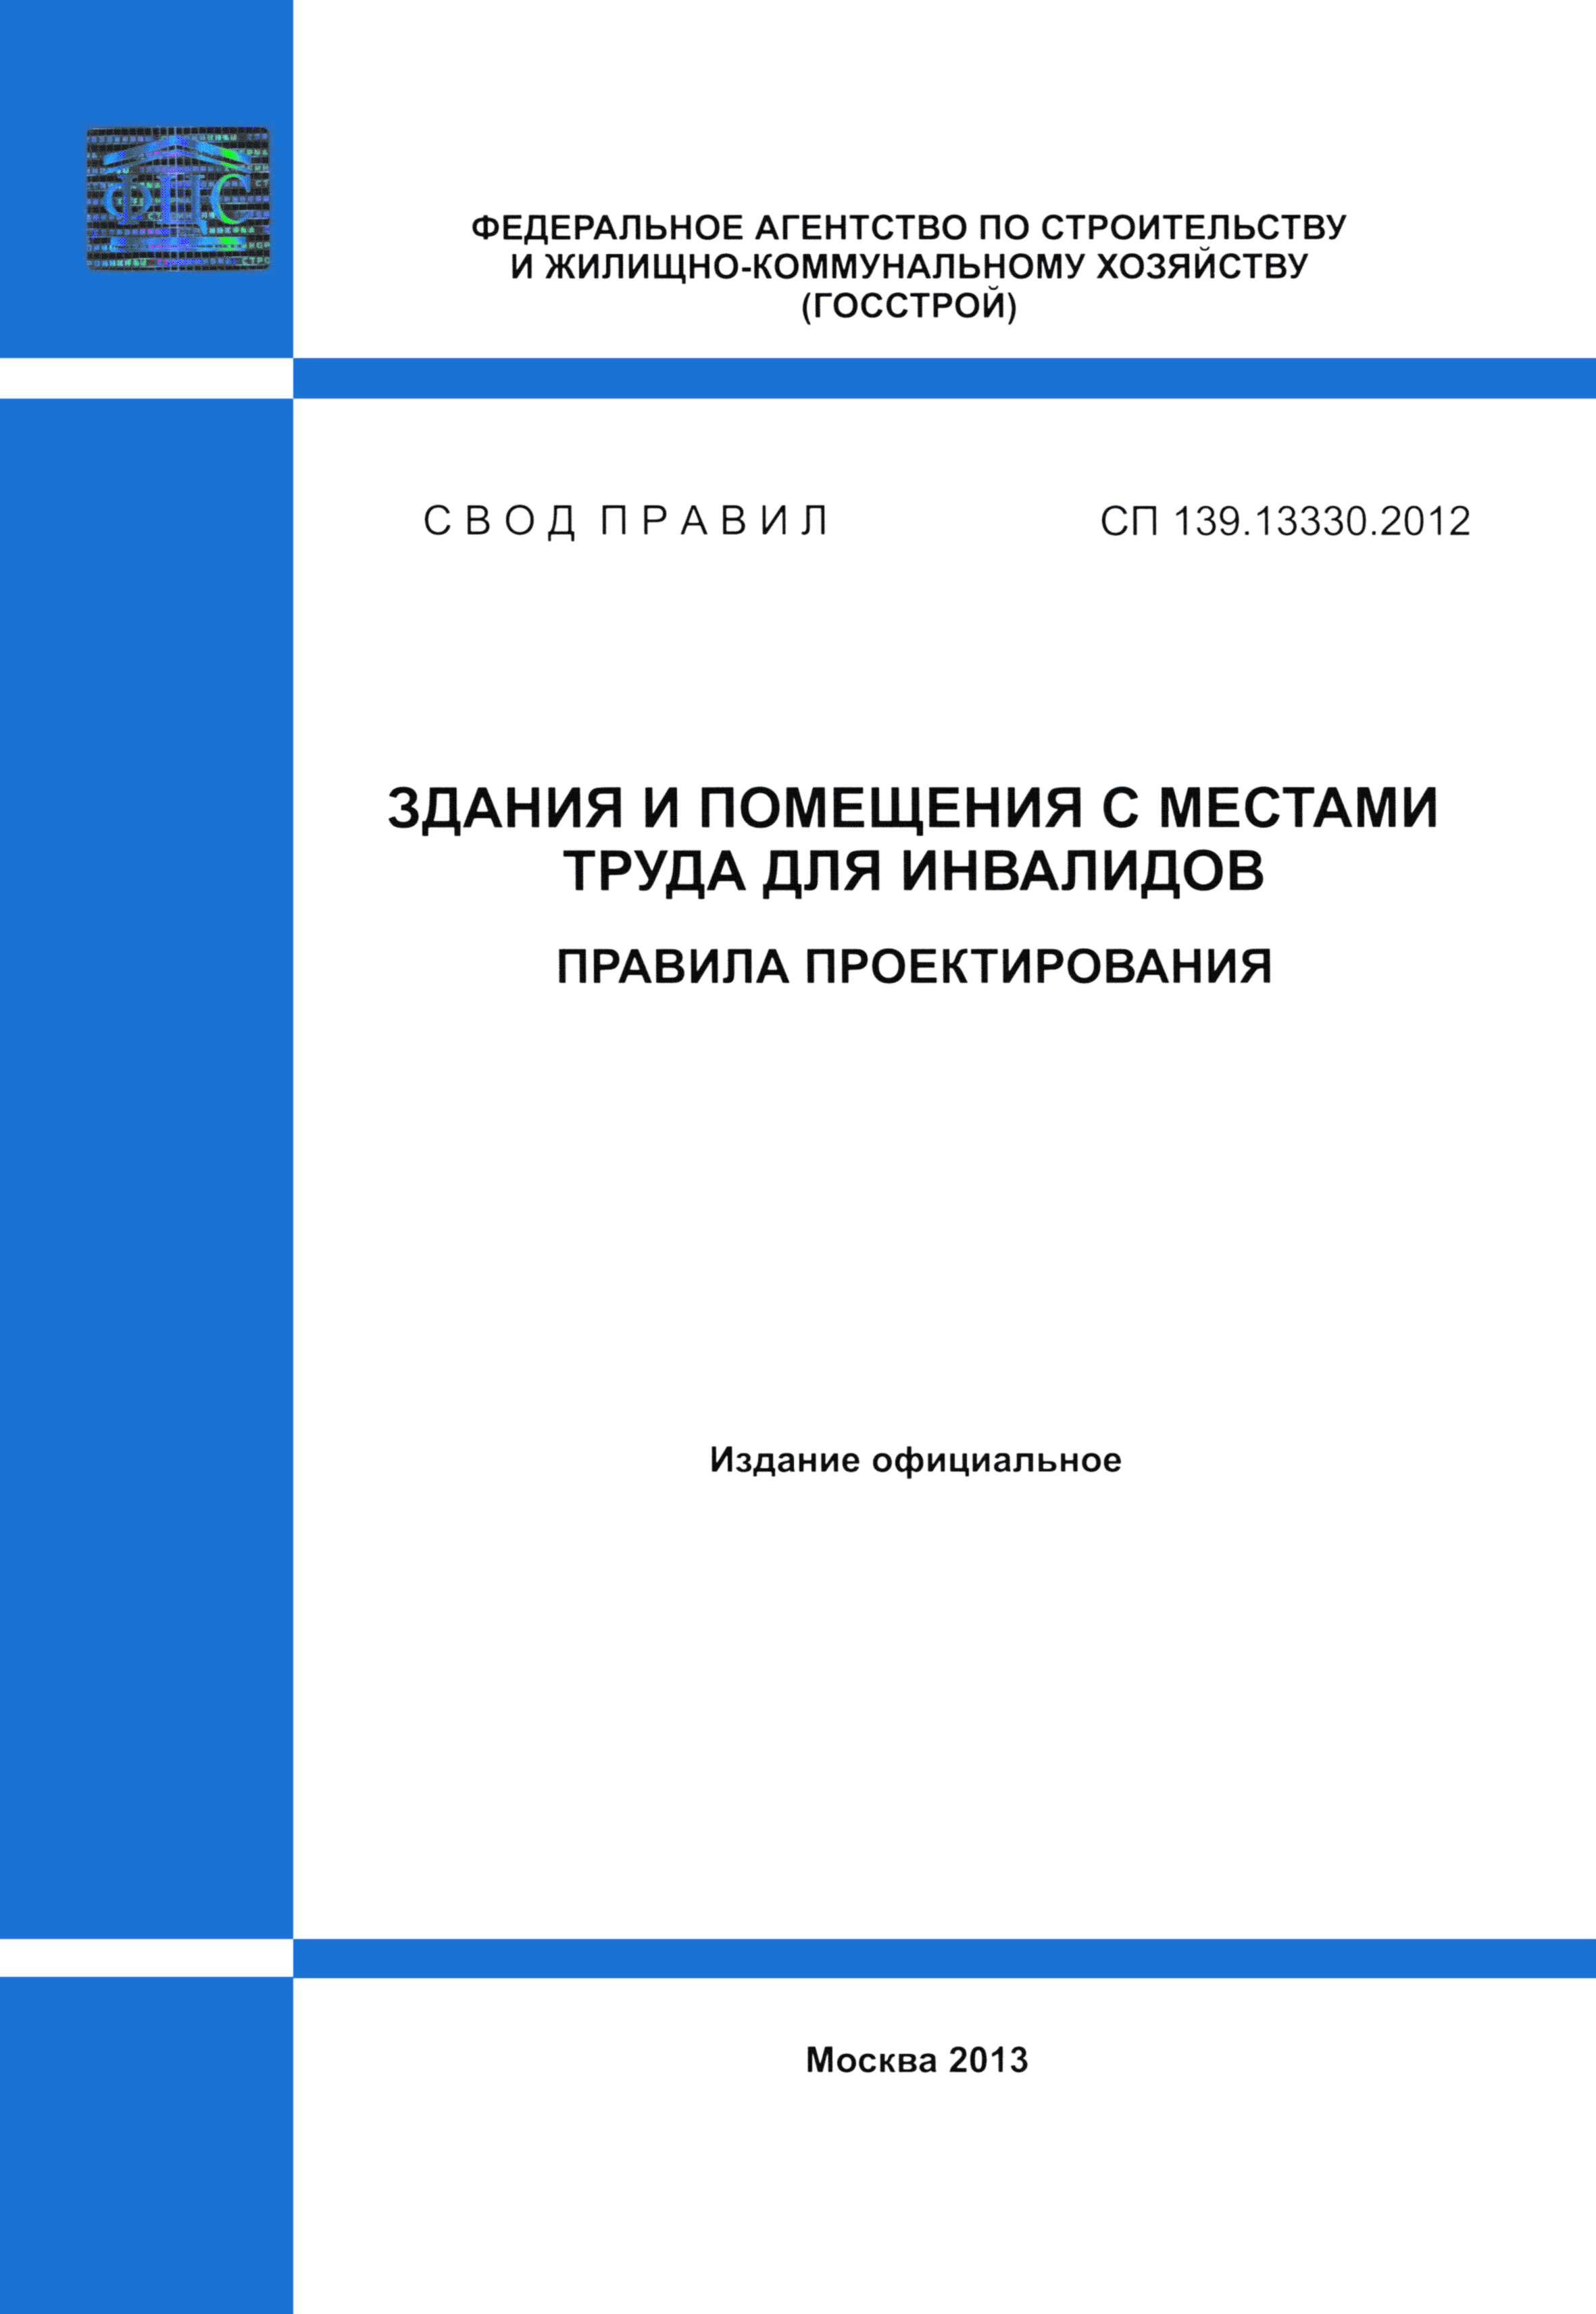 СП 139.13330.2012